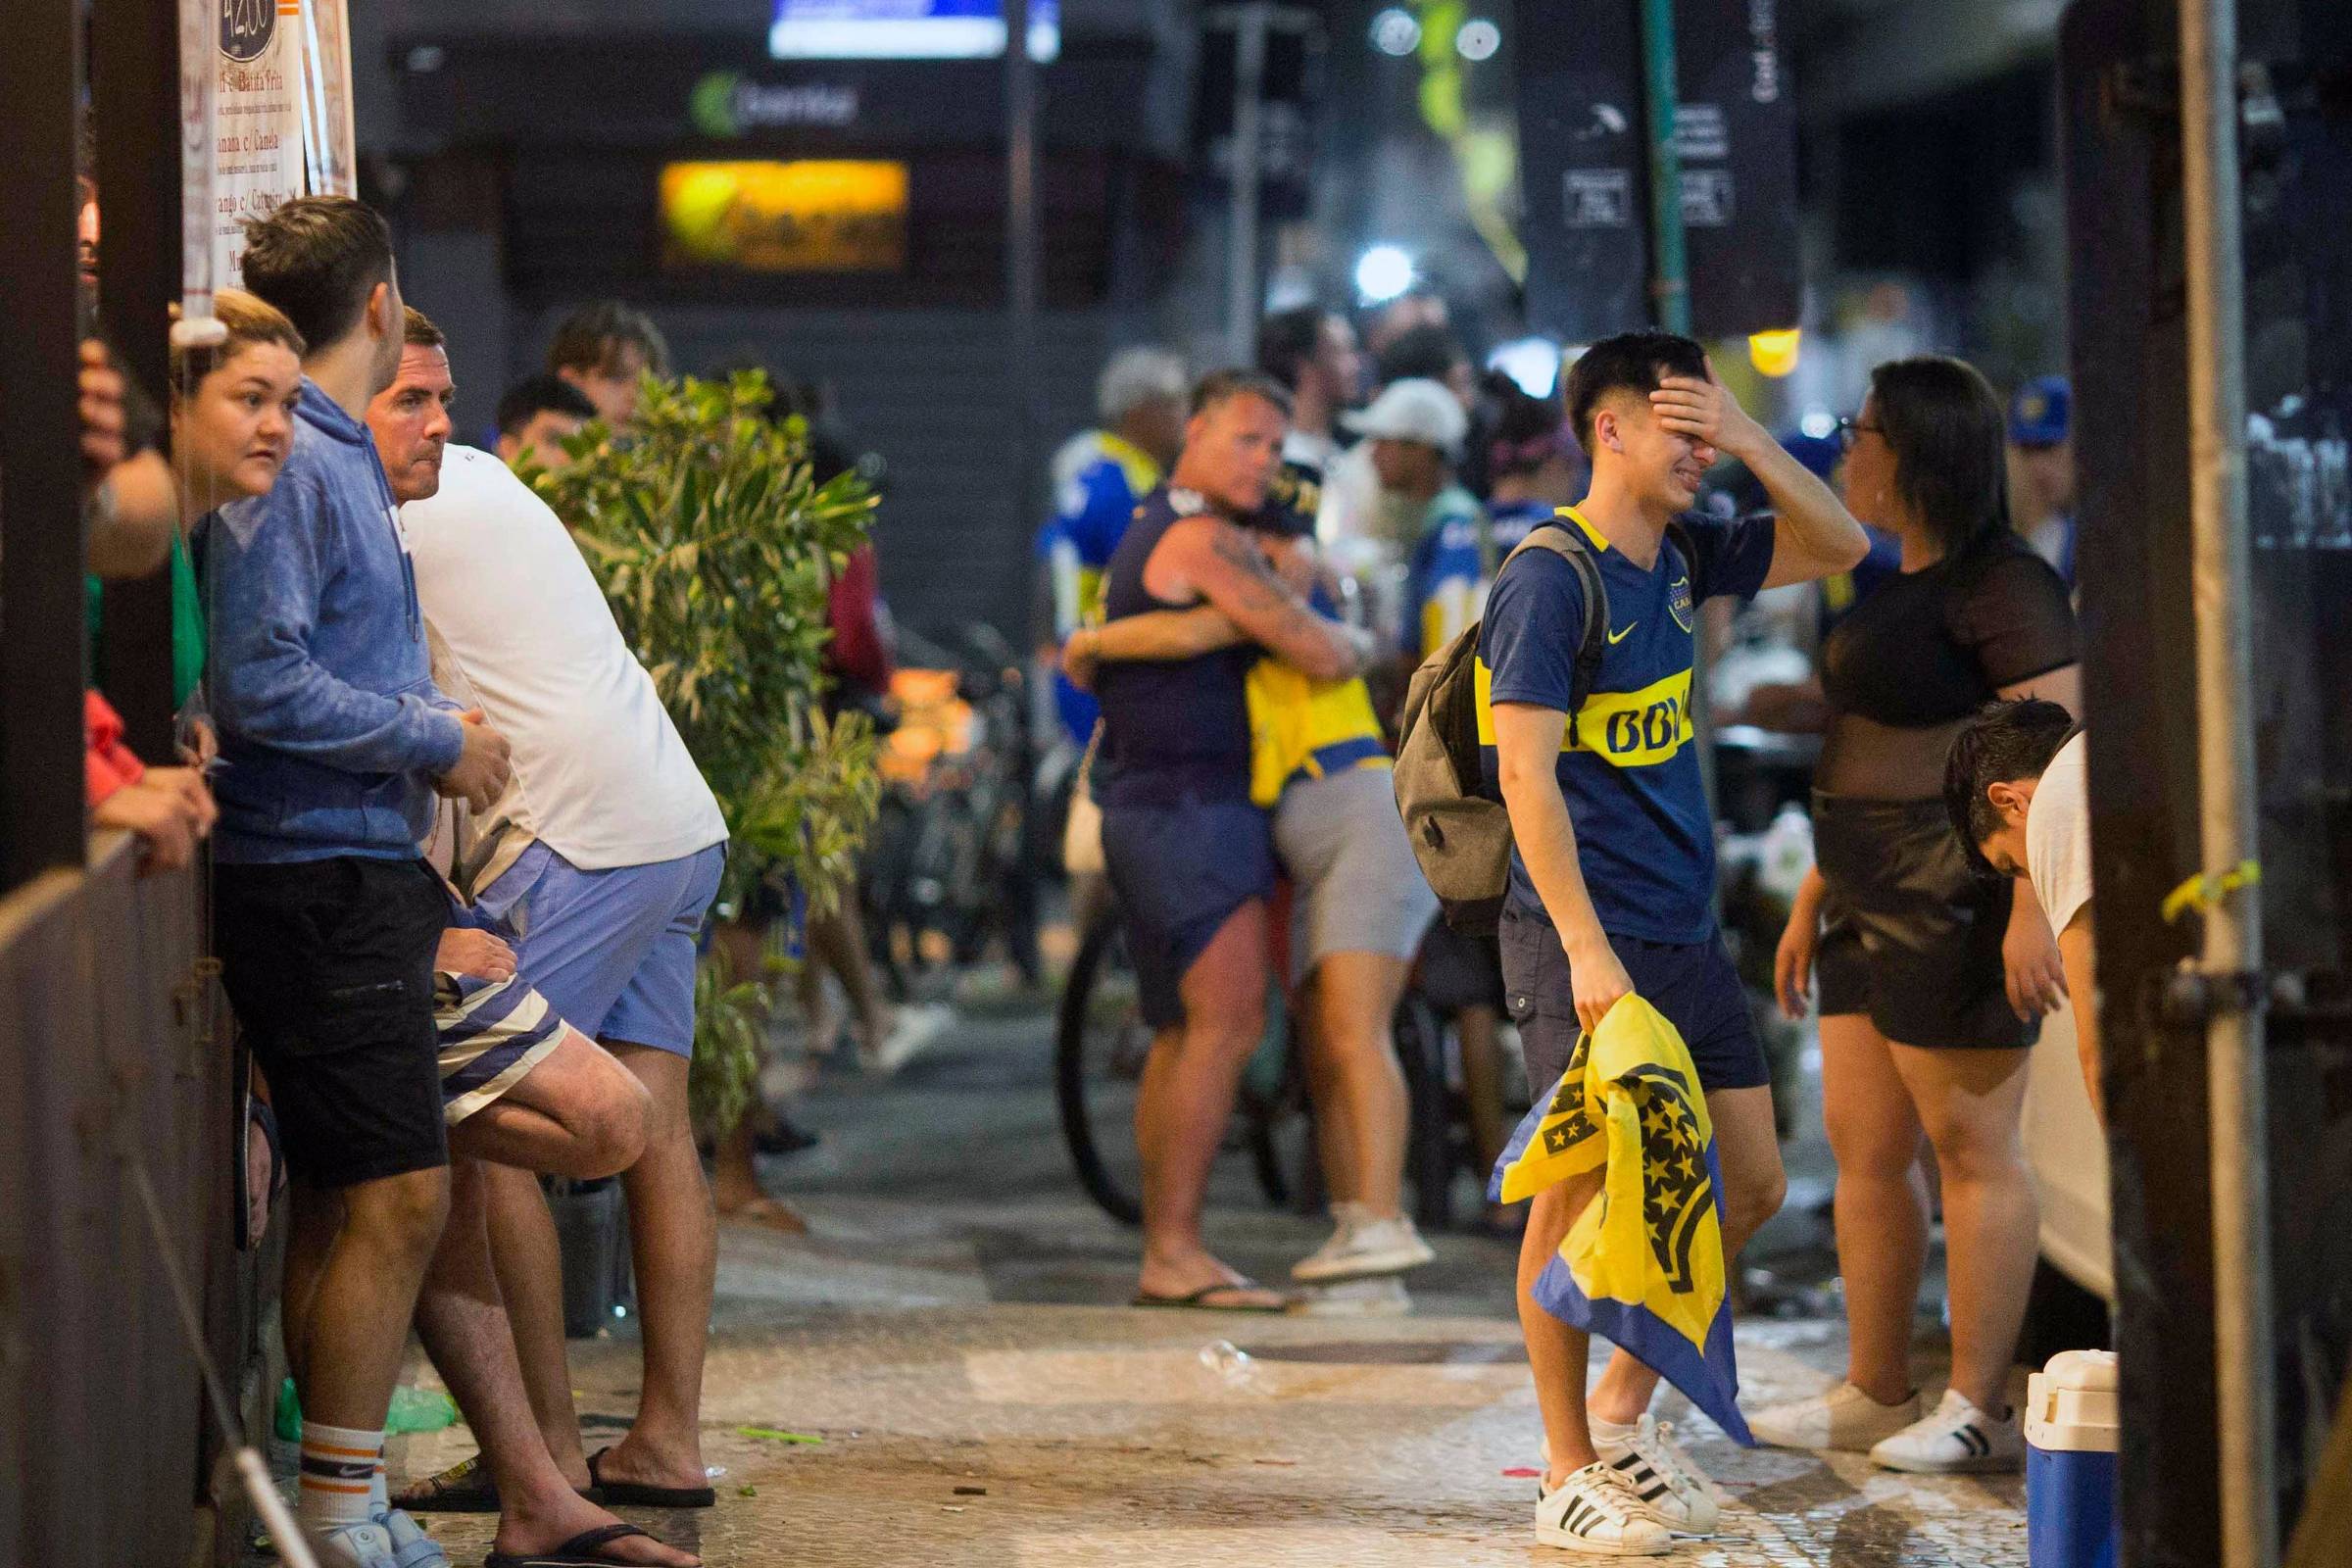 Torcida do Boca fica de fora por ingressos falsos; Polícia reage